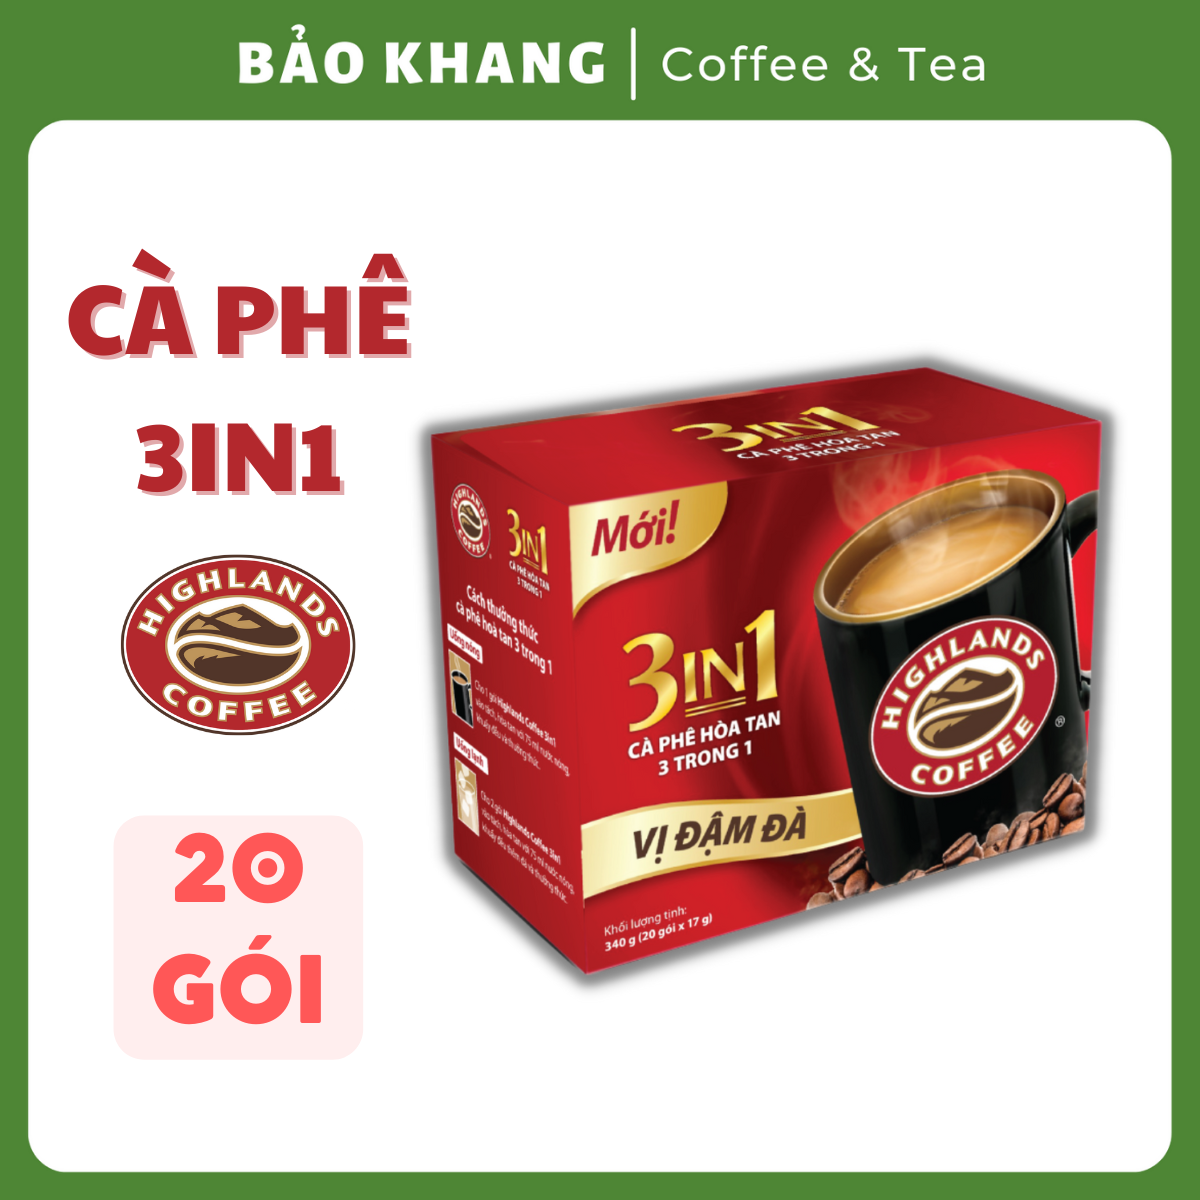 Cà Phê Highland 3in1 Hòa Tan 17g 20 gói - Bảo Khang Coffee & Tea